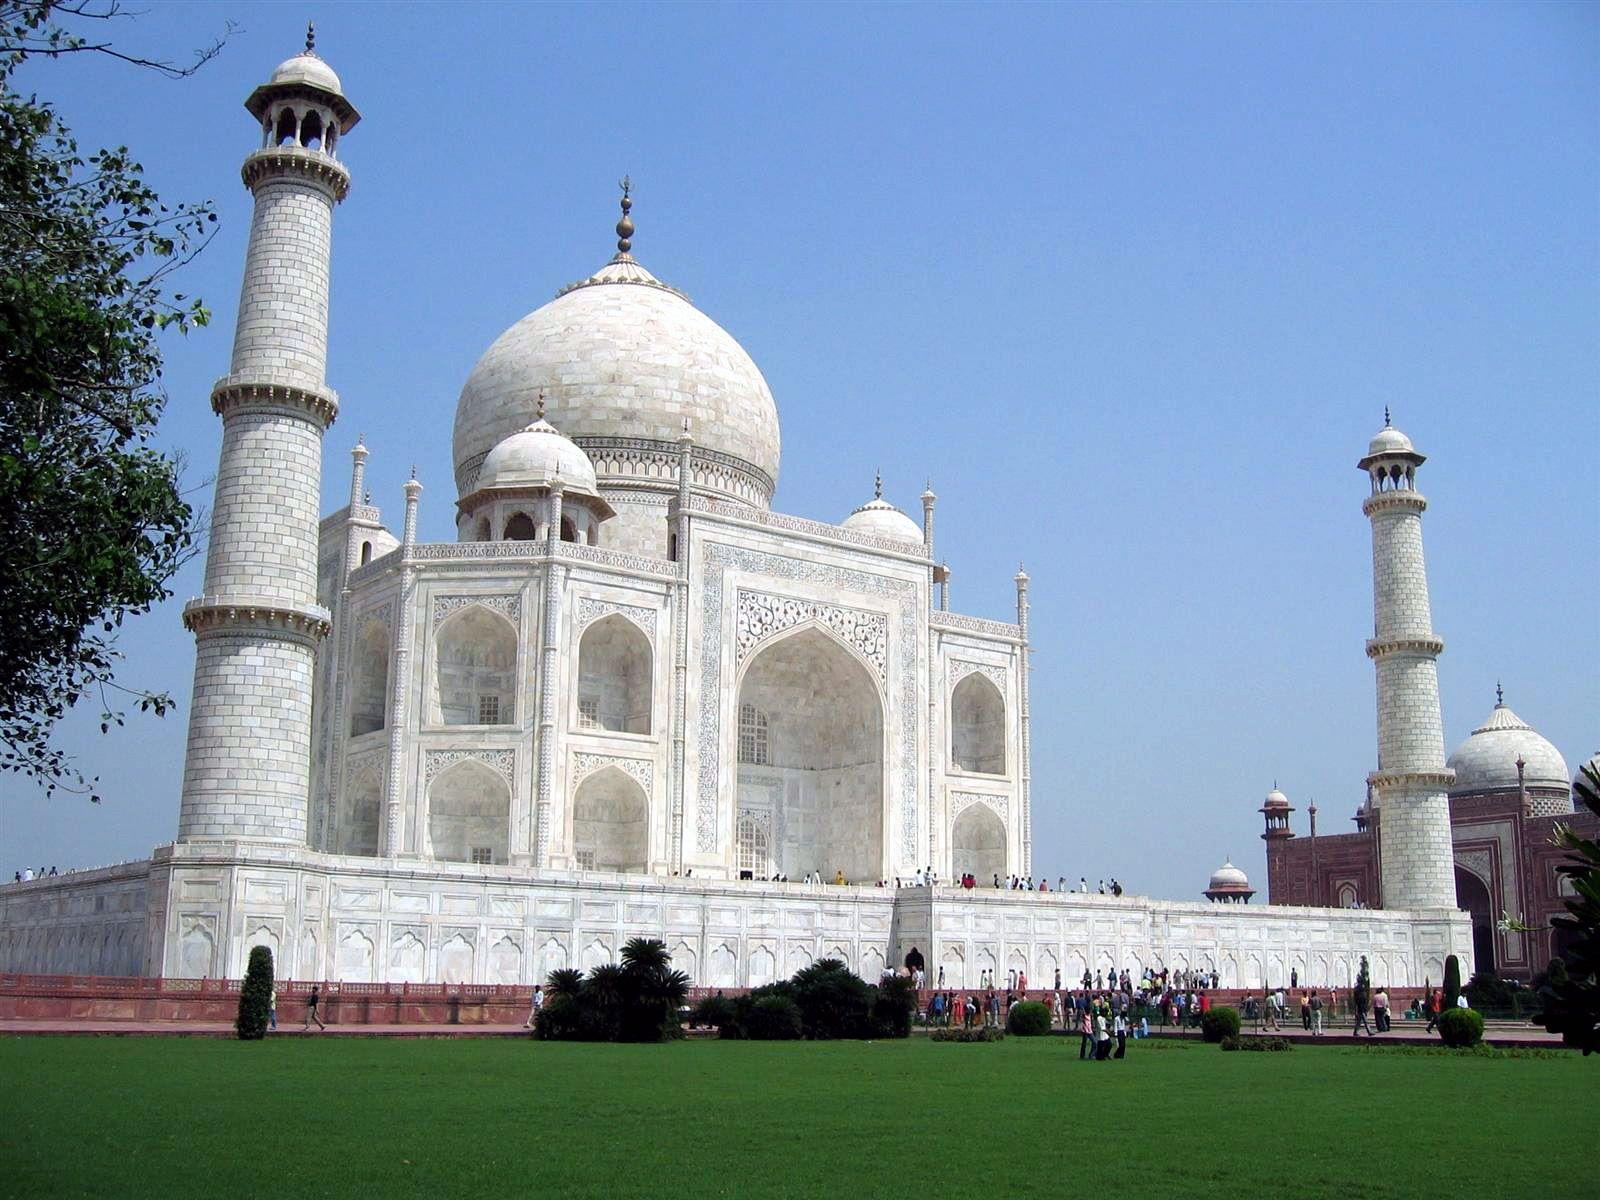 Taj Mahal Backgrounds Wallpaper Cave